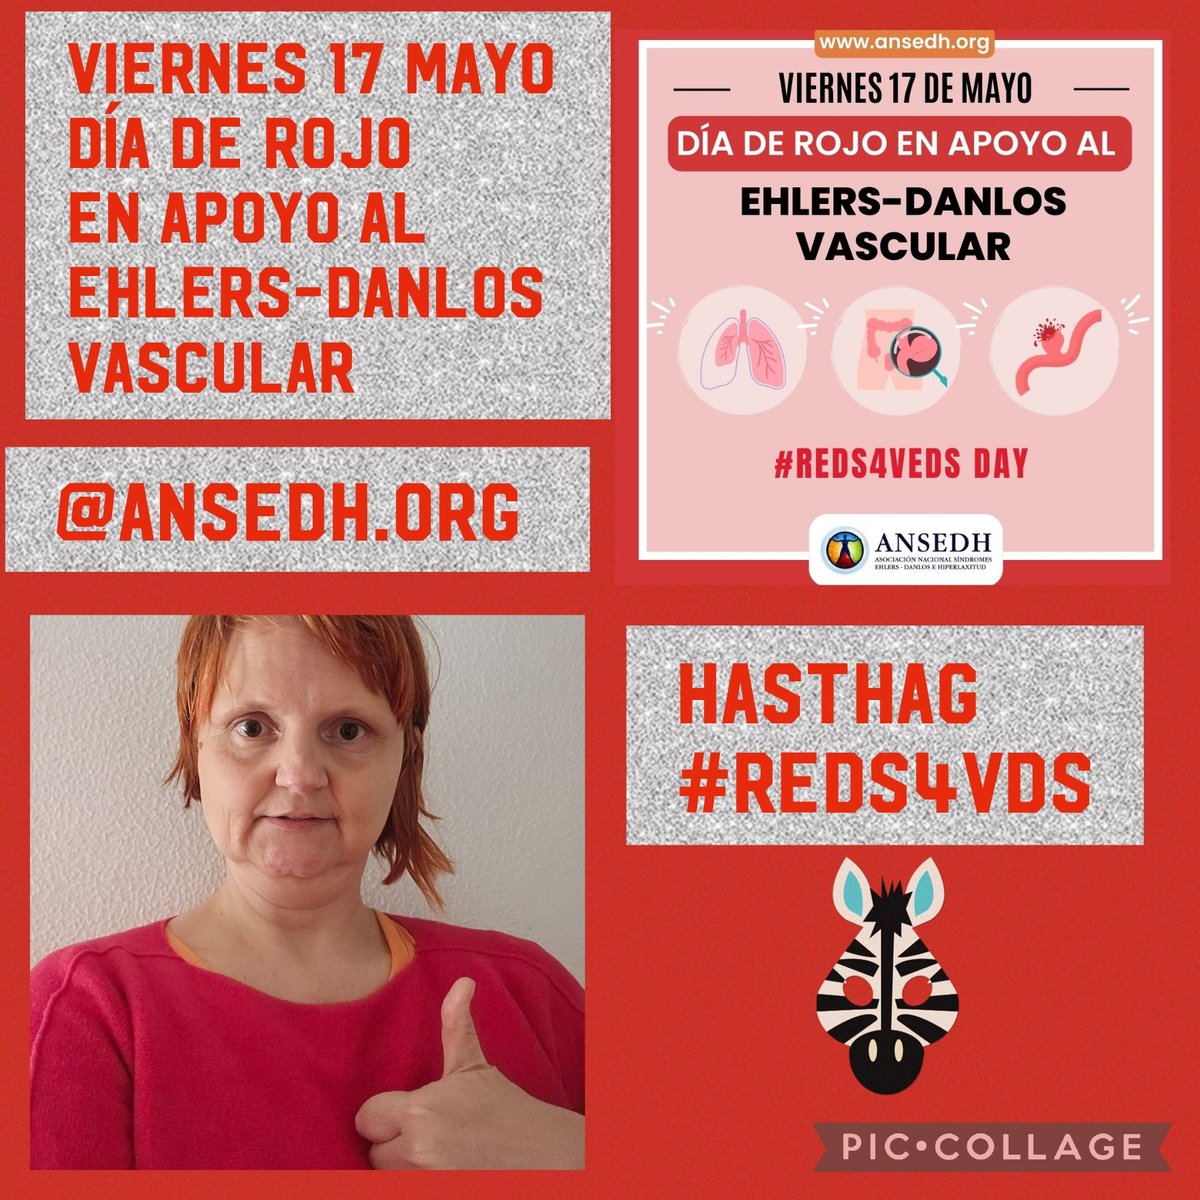 Buenas noches a todos y a todas hoy viernes 17/05/2024 me quiero unir al hasthag #reds4veds en el día rojo en apoyo al Ehlers-Danlos vascular con la Asociación @ANSEDH Como yo digo y creo en mi hasthag #siempreadelante💪🧡🦓